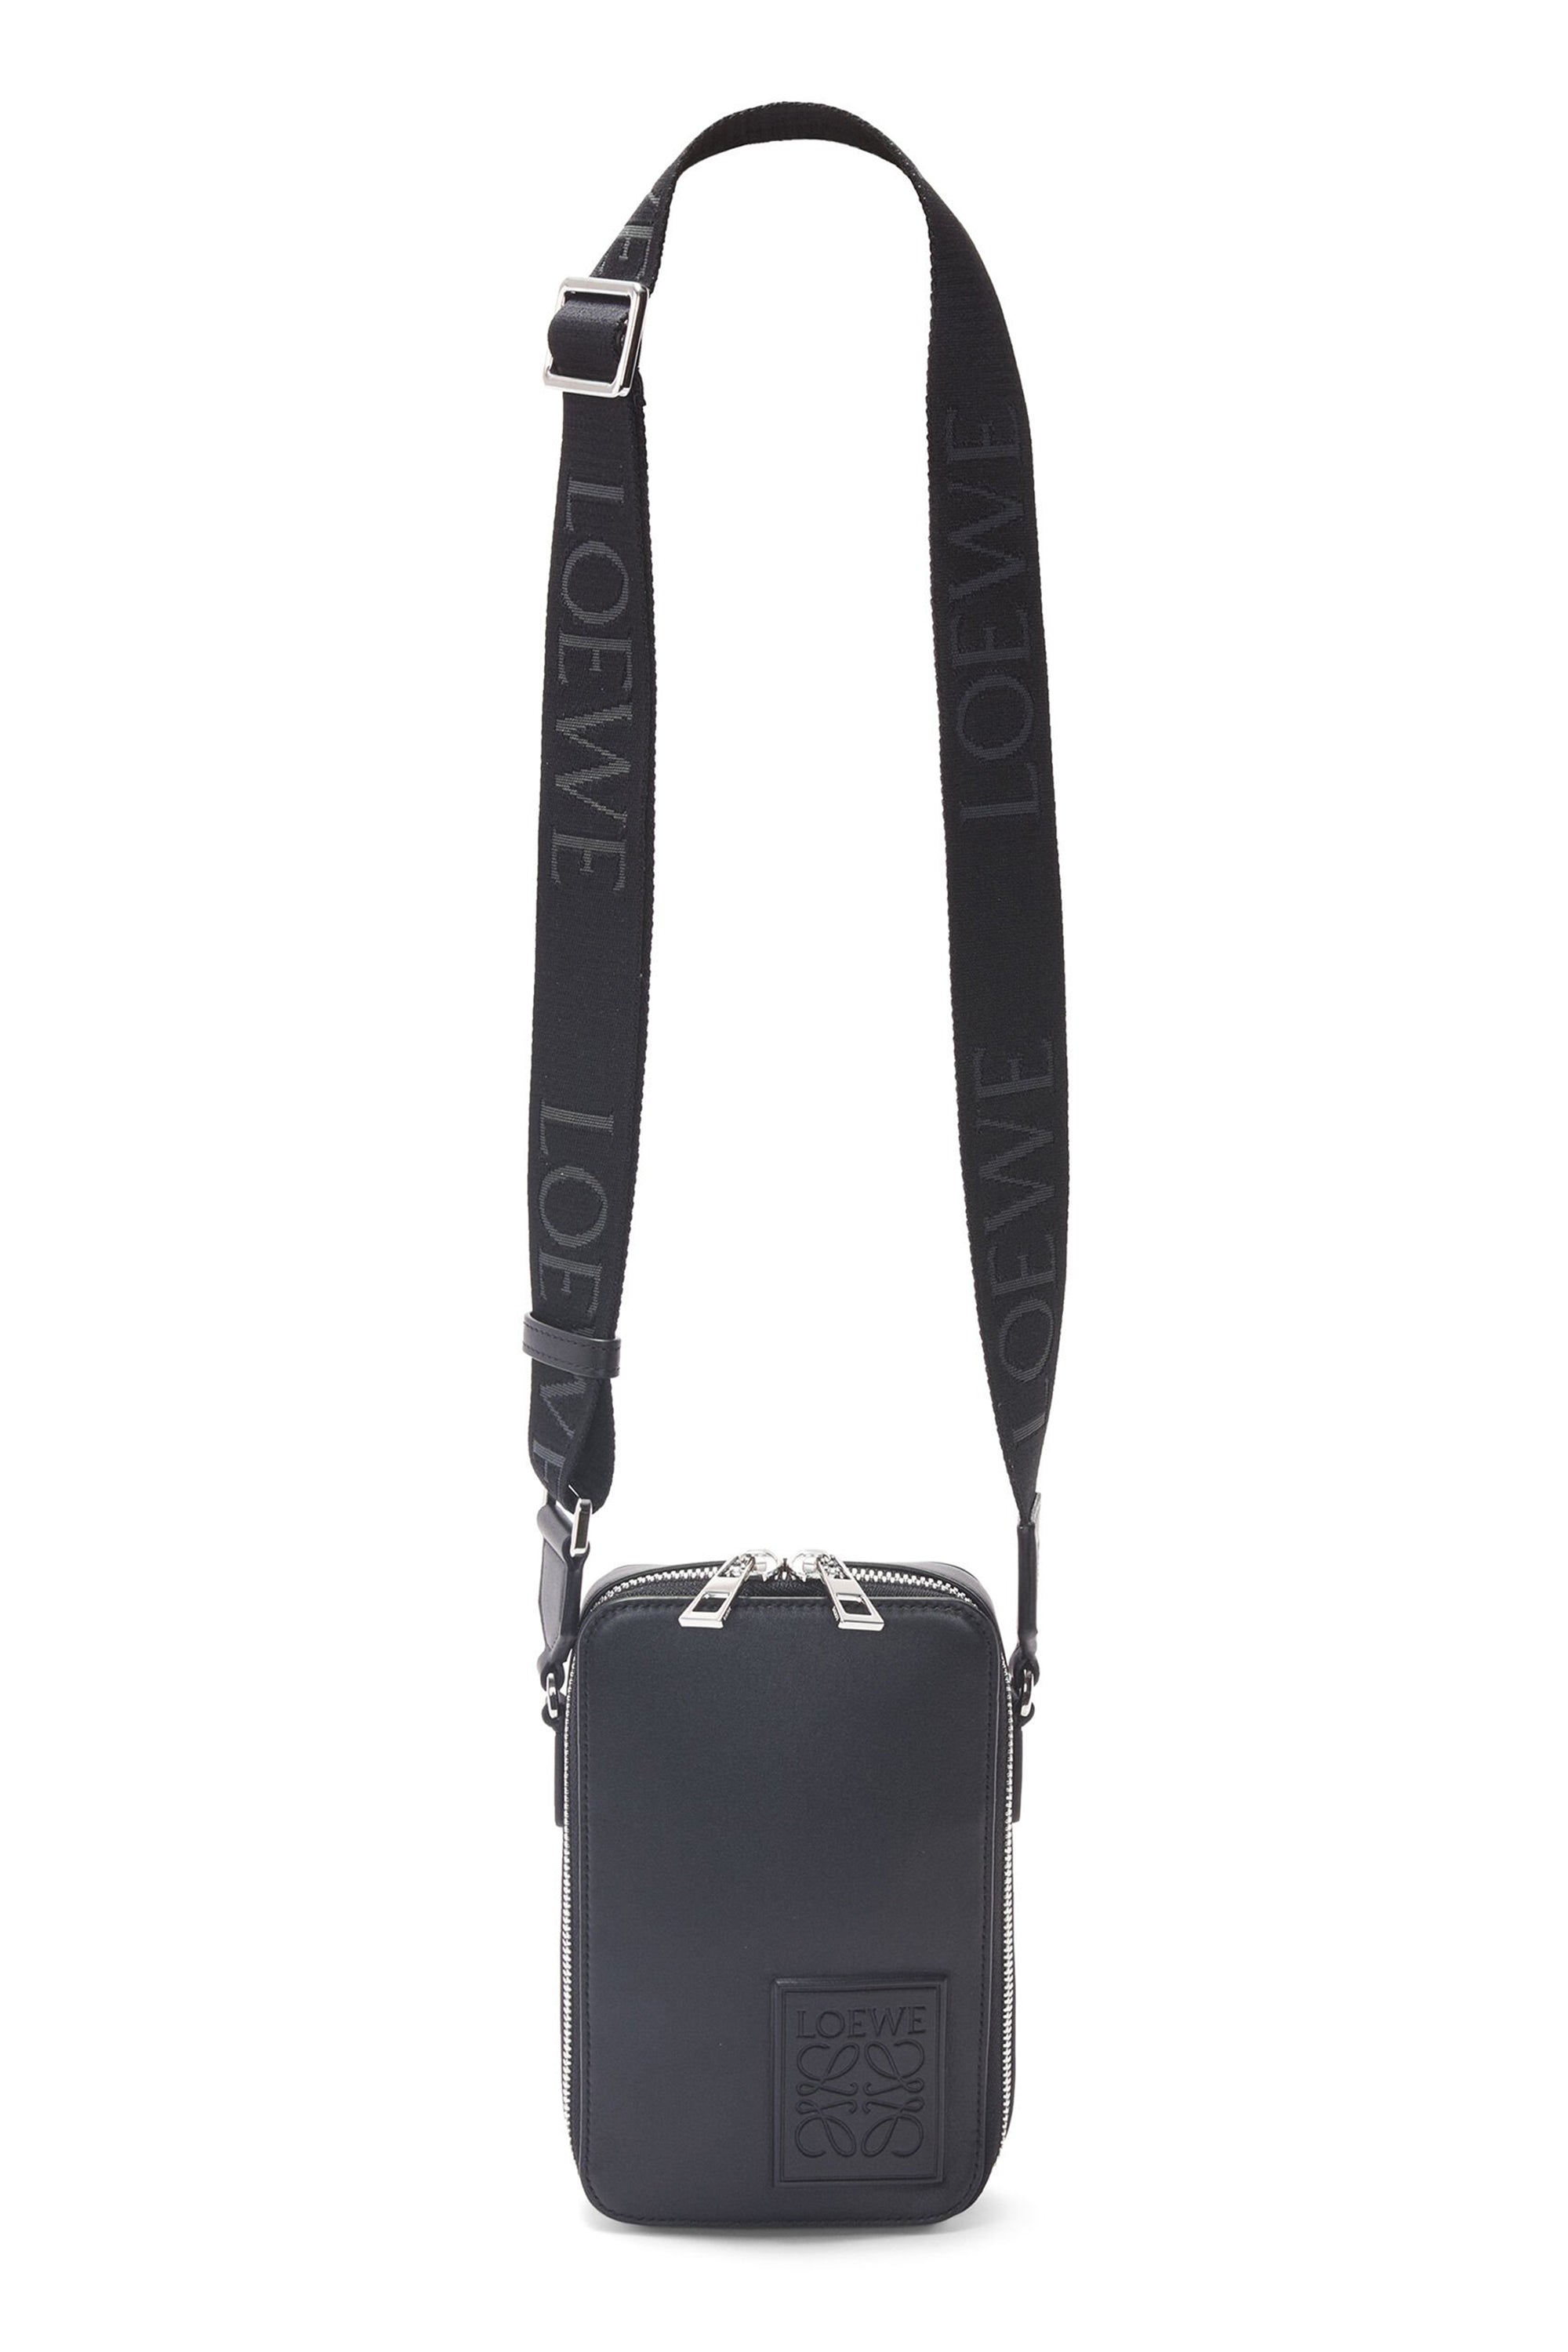 LOEWE Puzzle Bag 2way Blue Leather Medium handbag Shoulder Strap from japan